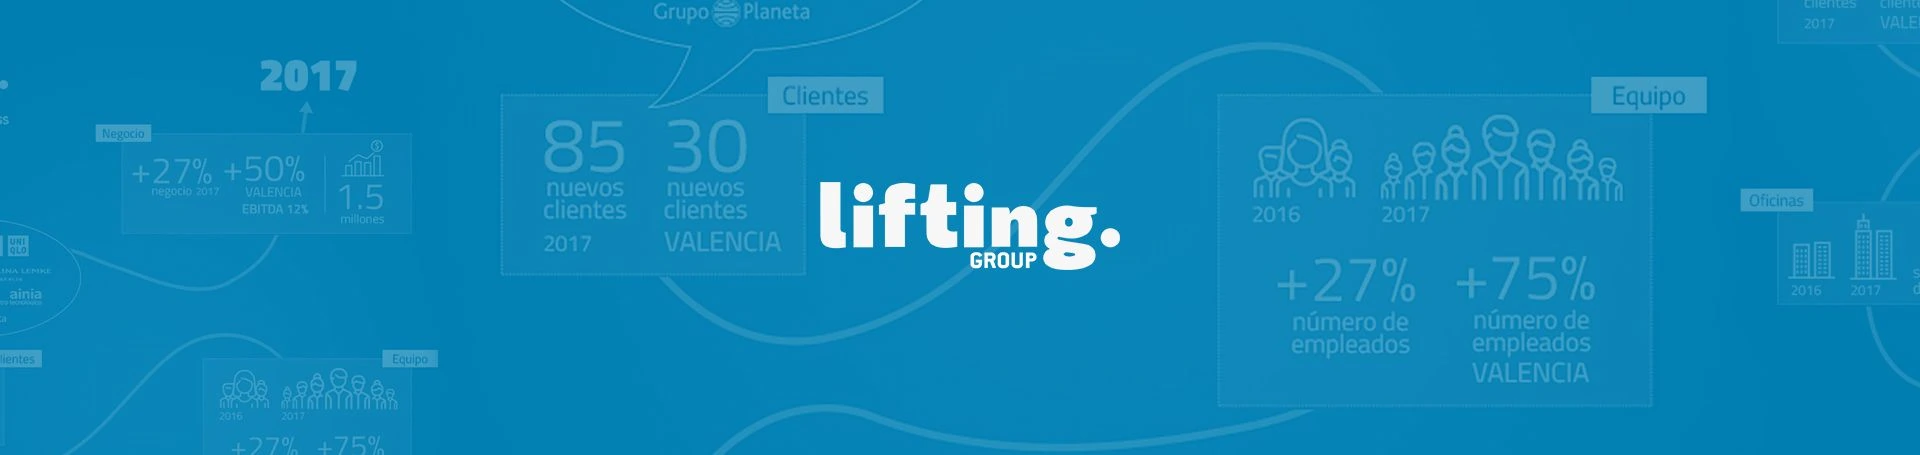 2017, un buen año para Lifting Group